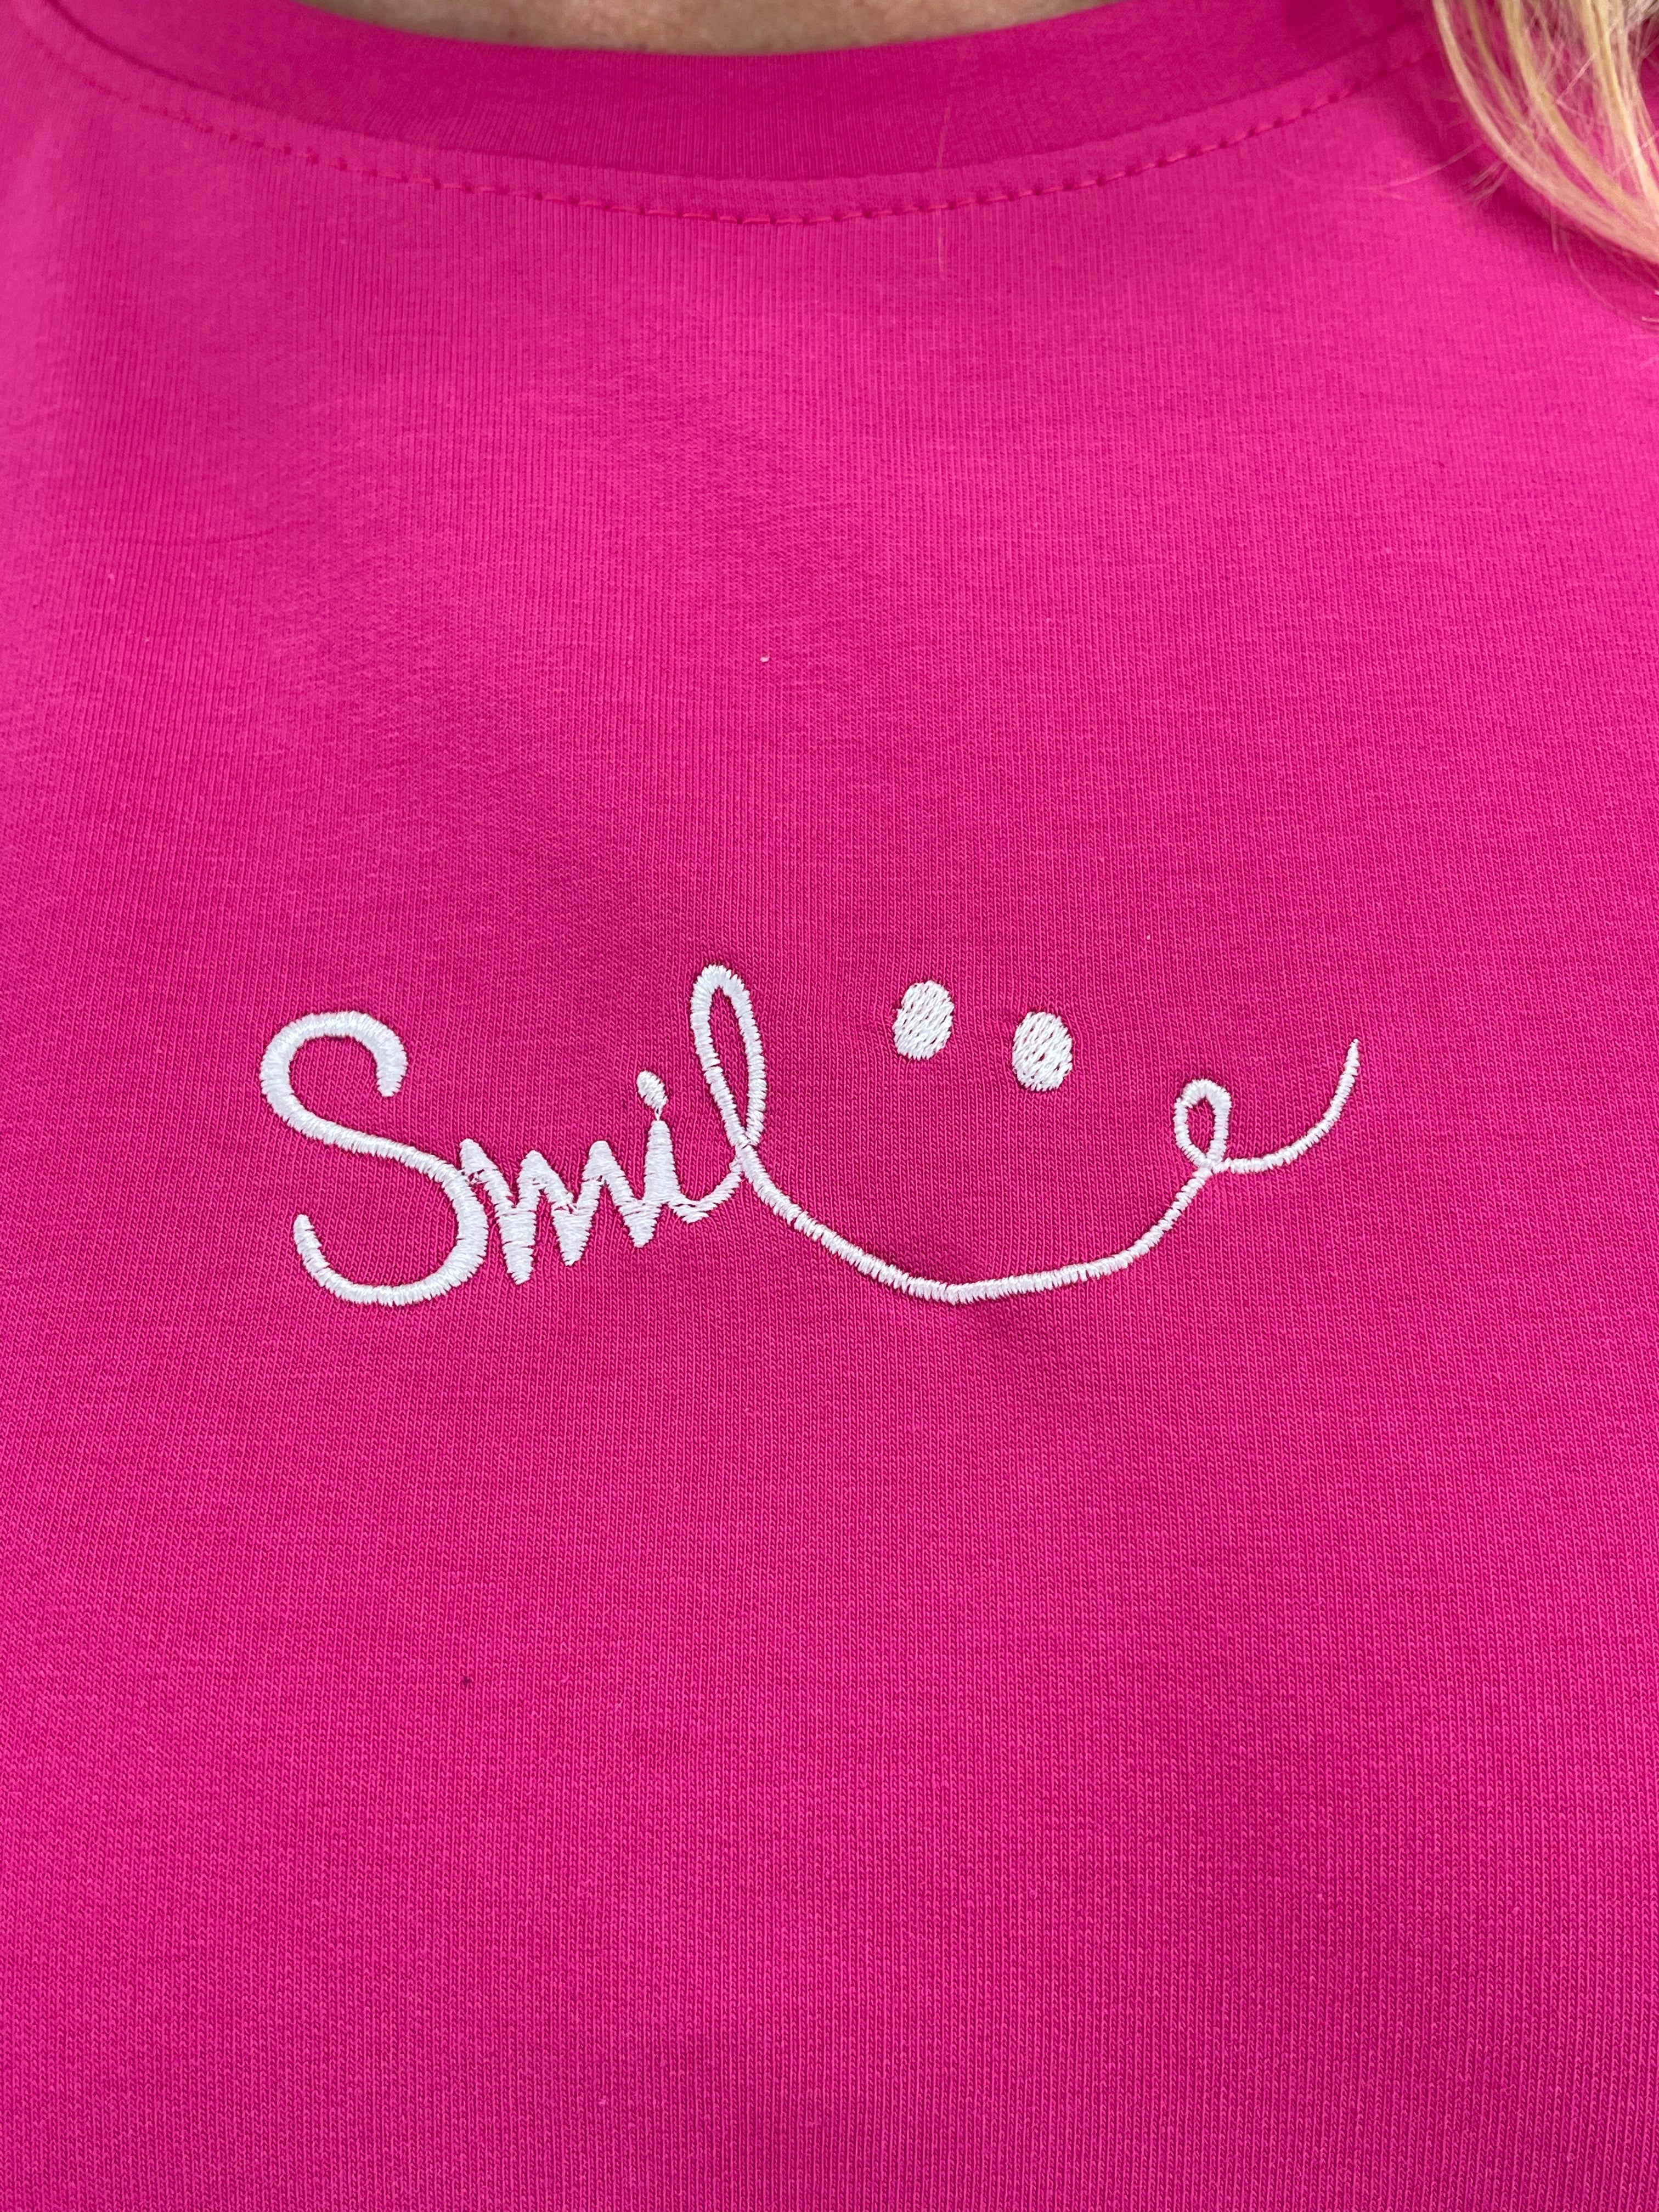 Pullover „Smile“ Einheitsgrösse Gr. 36 - 40/42